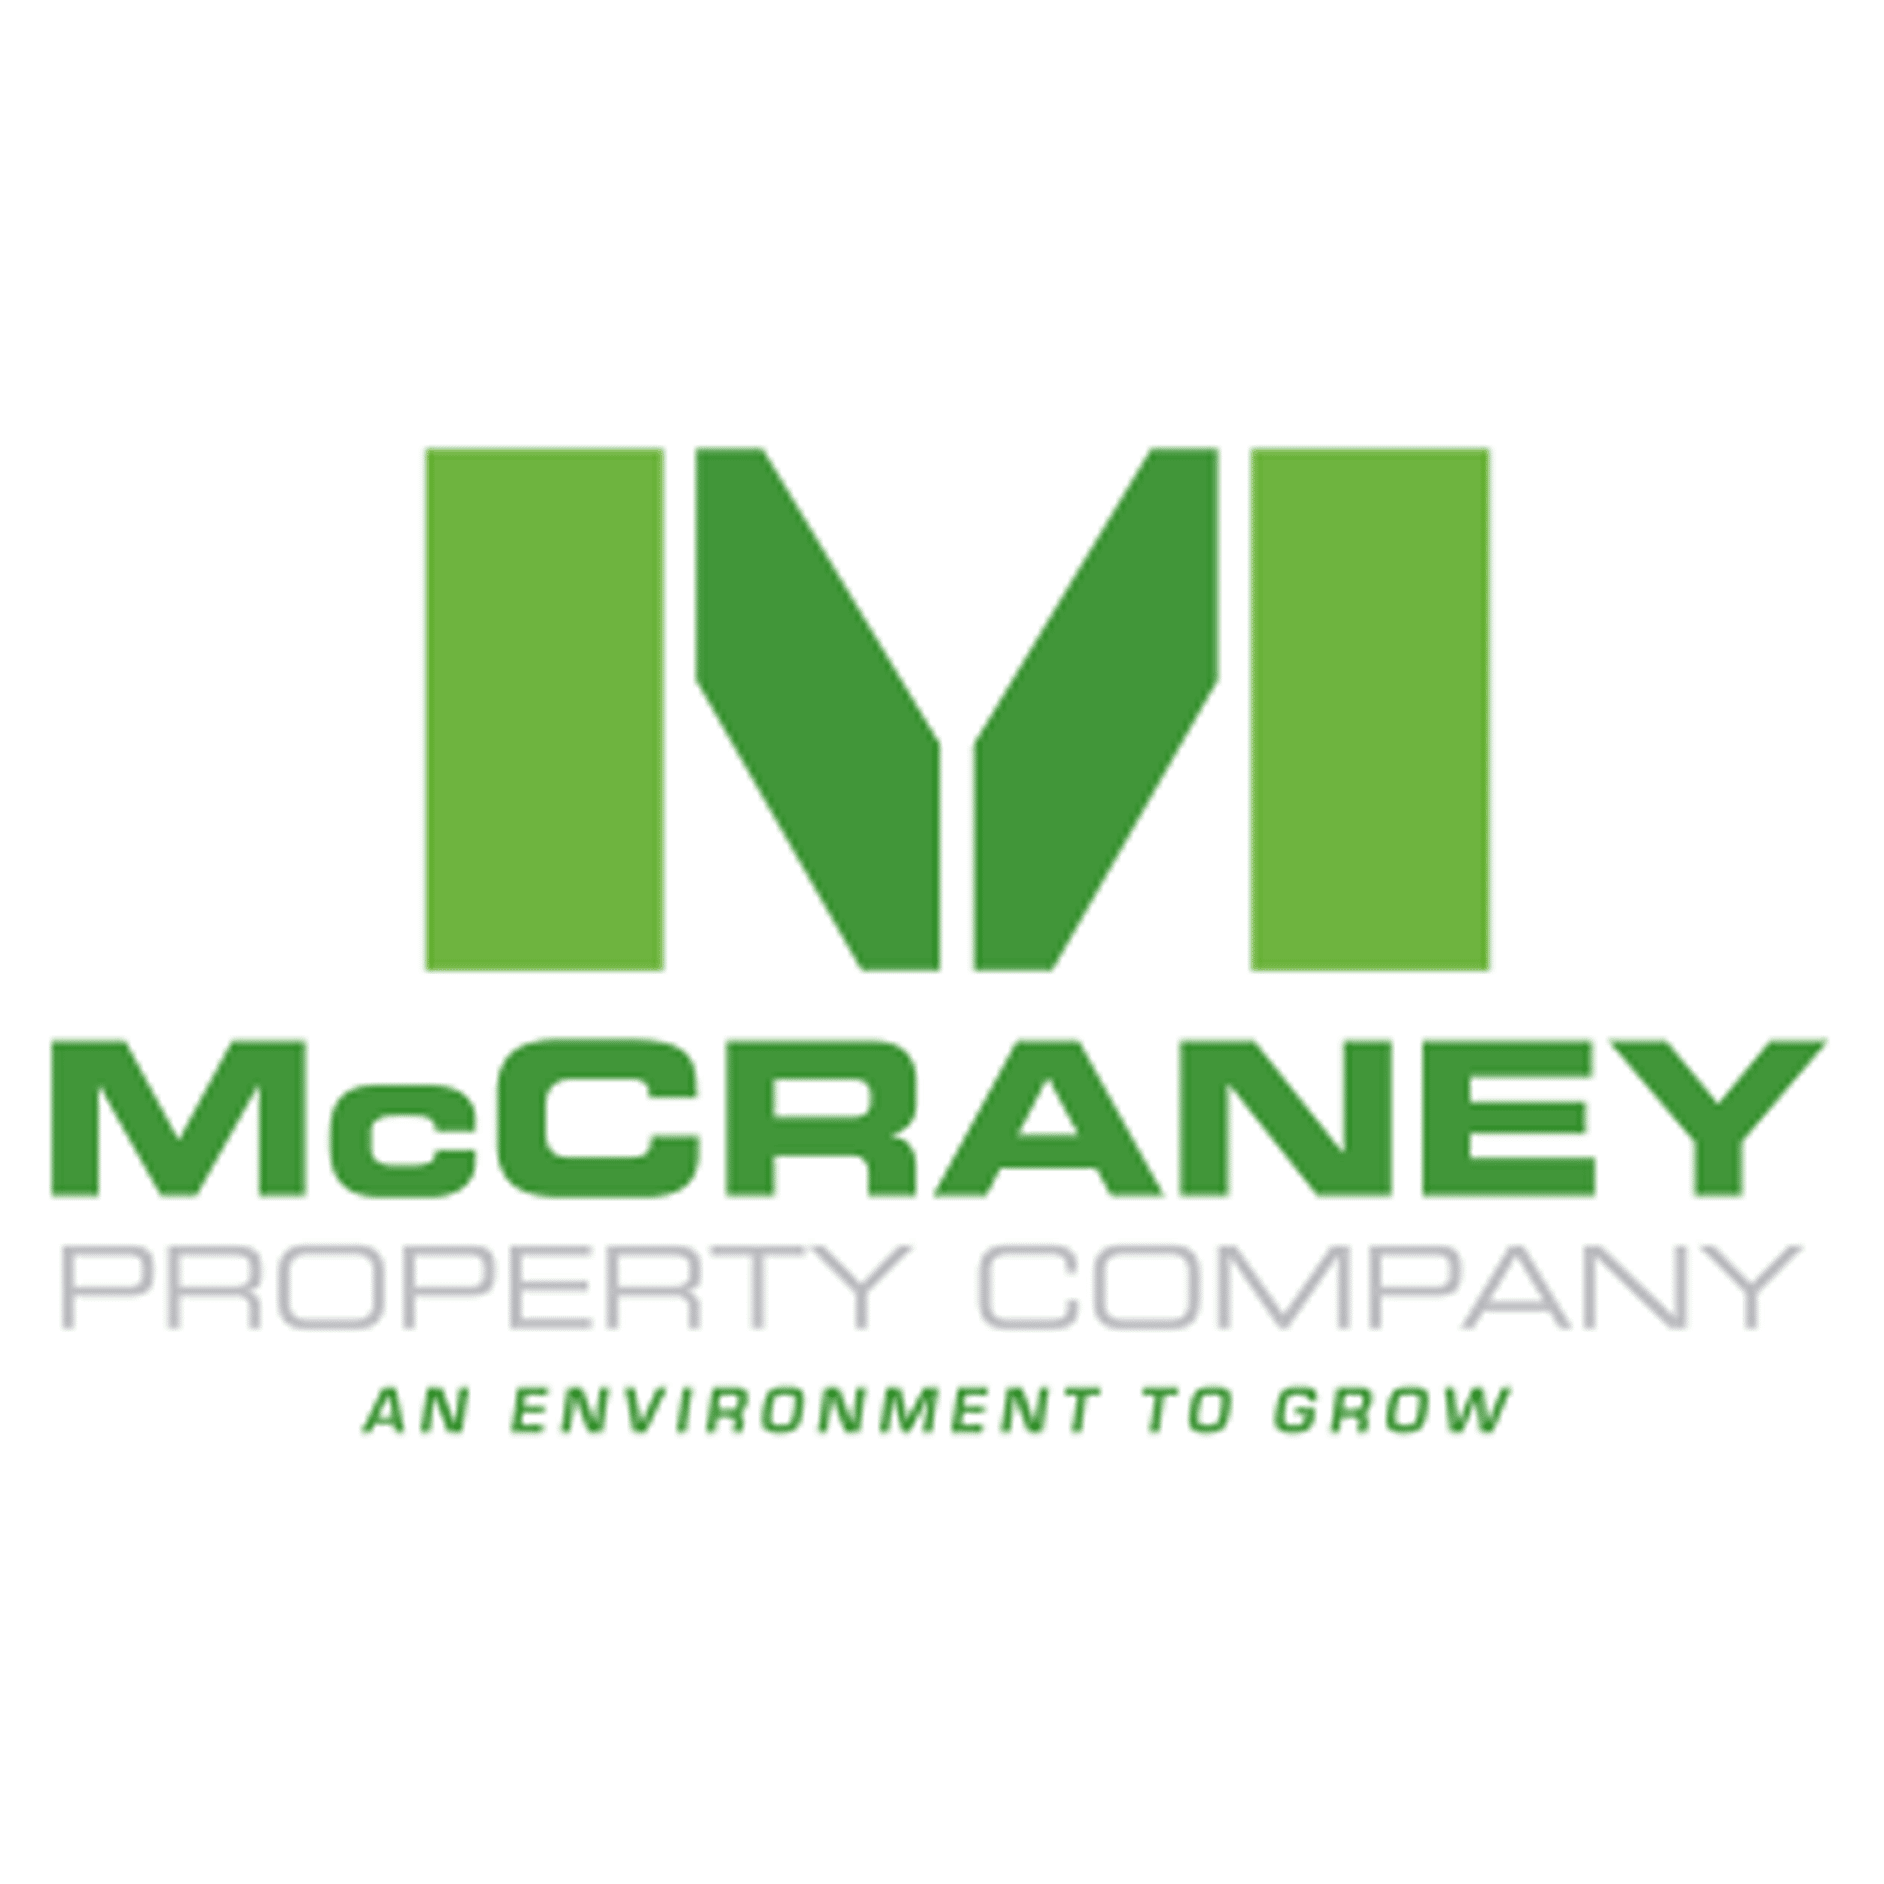 McCraney